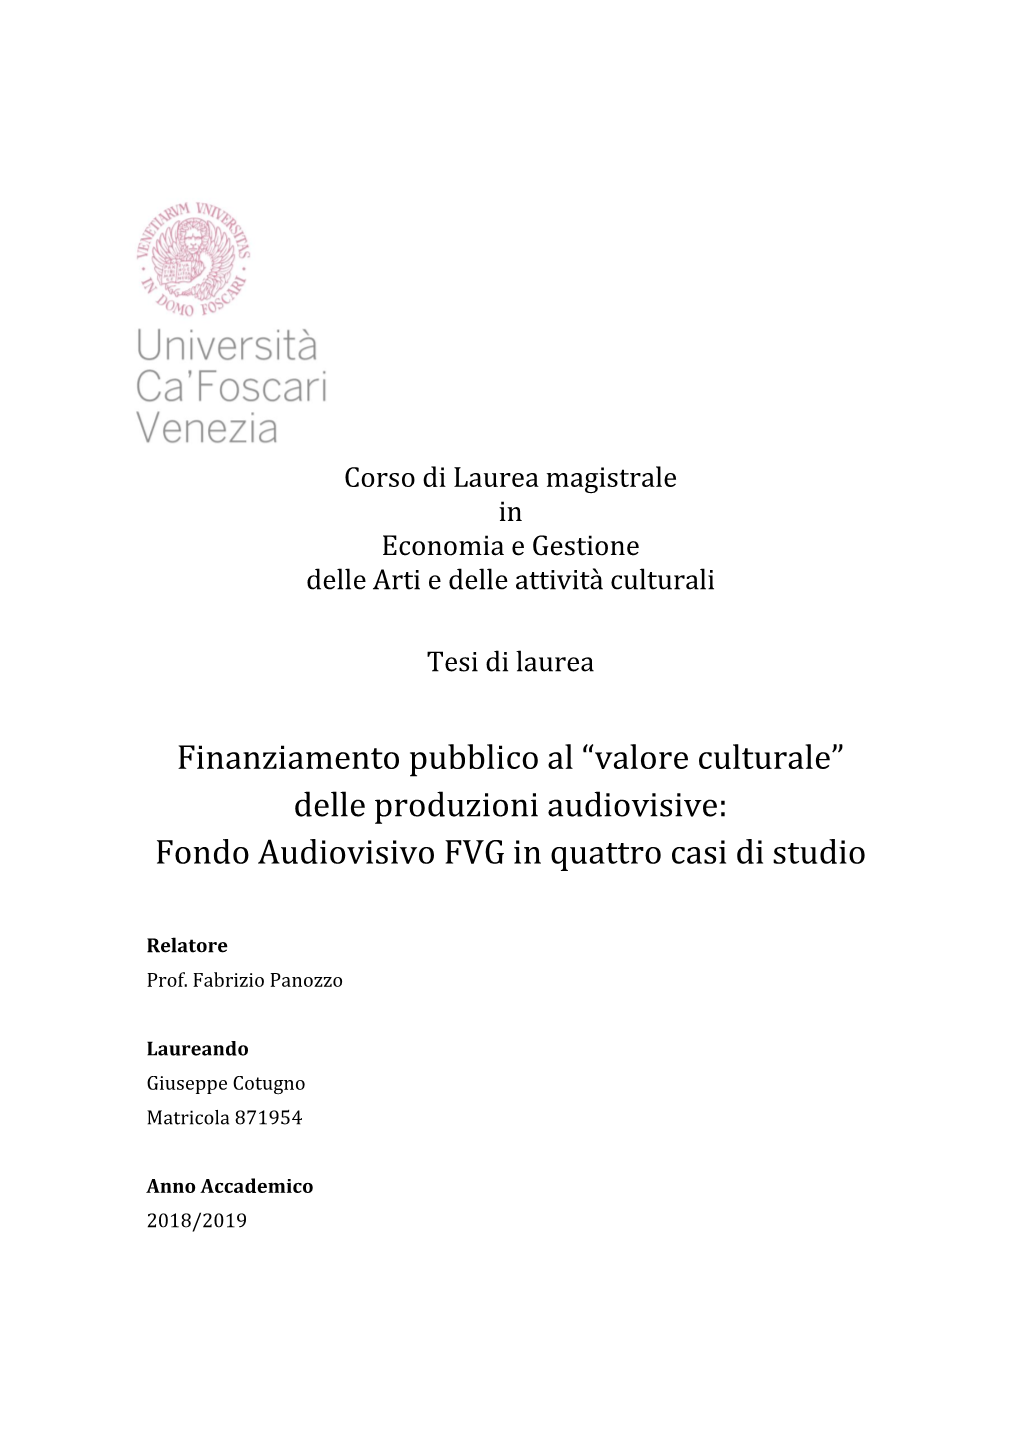 Finanziamento Pubblico Al “Valore Culturale” Delle Produzioni Audiovisive: Fondo Audiovisivo FVG in Quattro Casi Di Studio